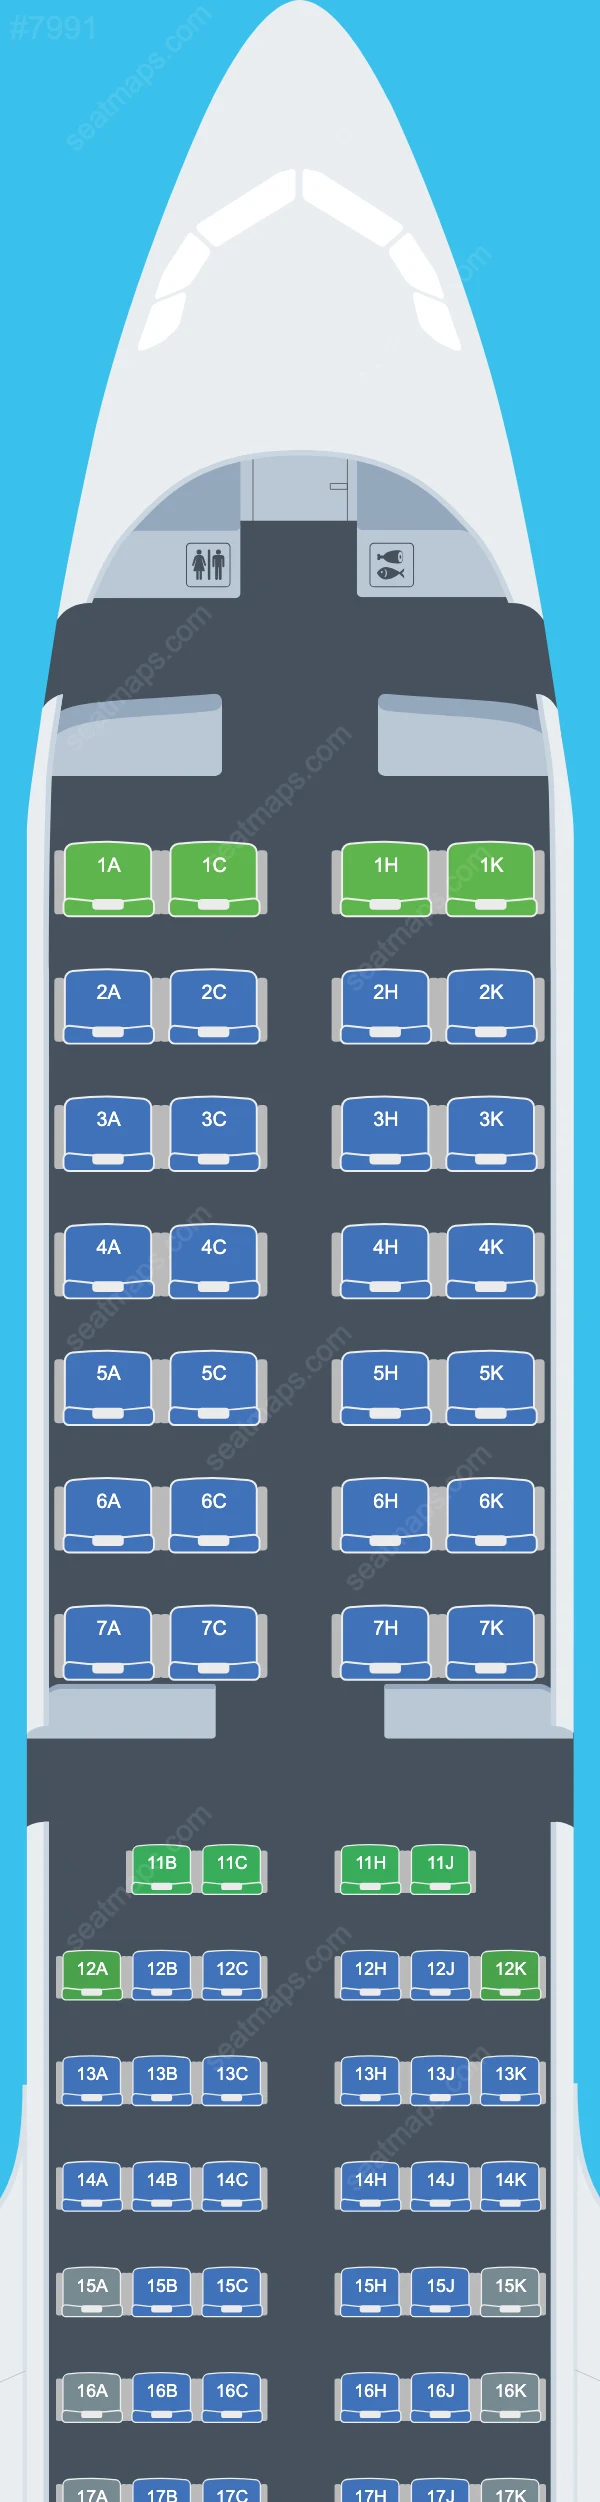 Air Astana Airbus A321 Seat Maps A321-200neo